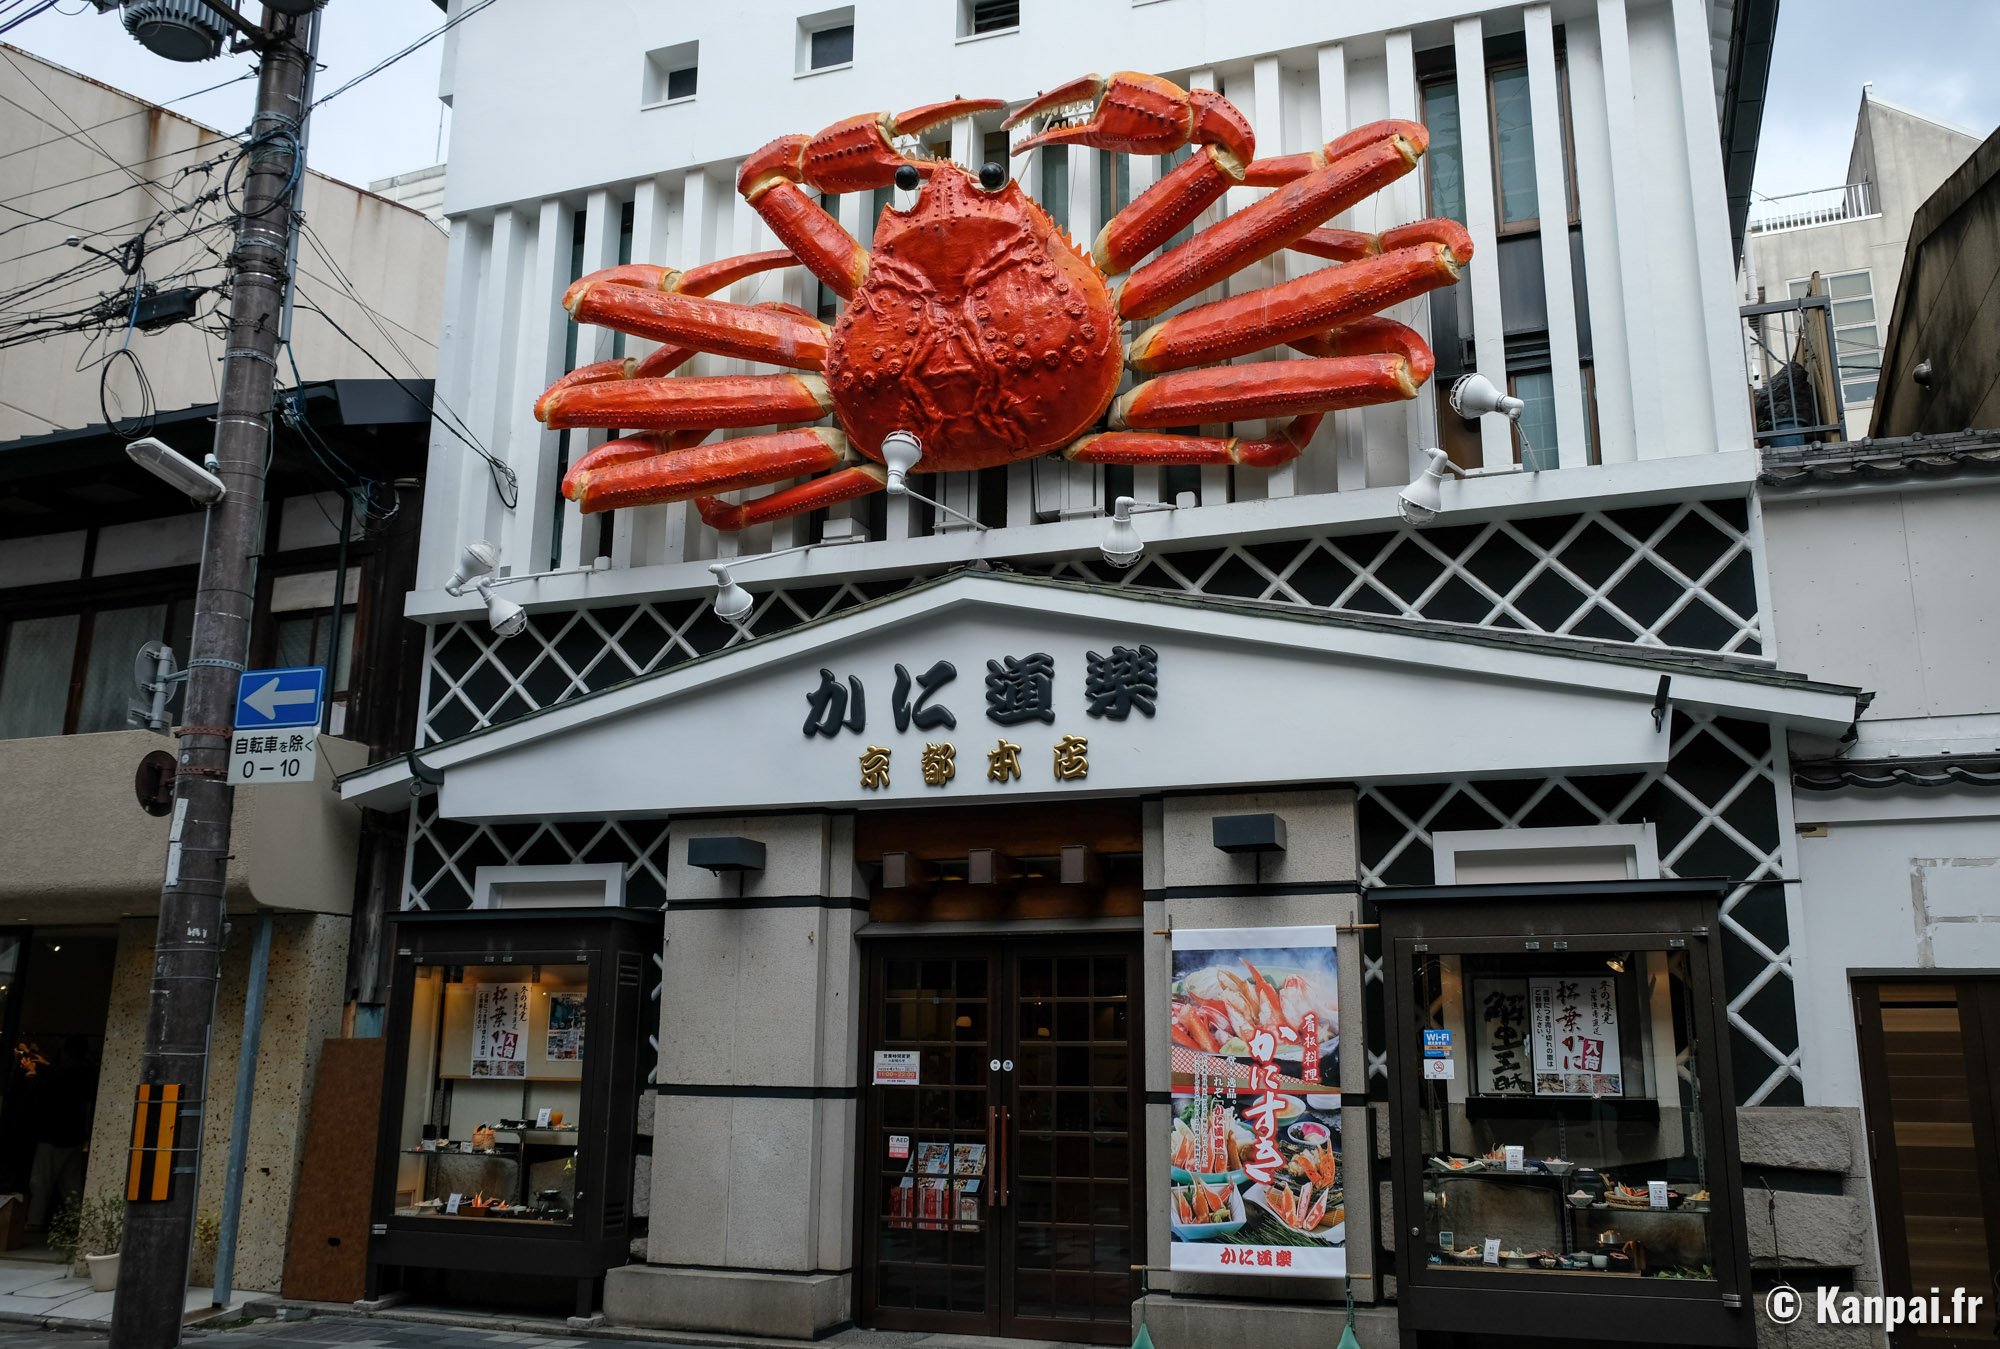 Le crabe de Kinosaki dans tous ses états !